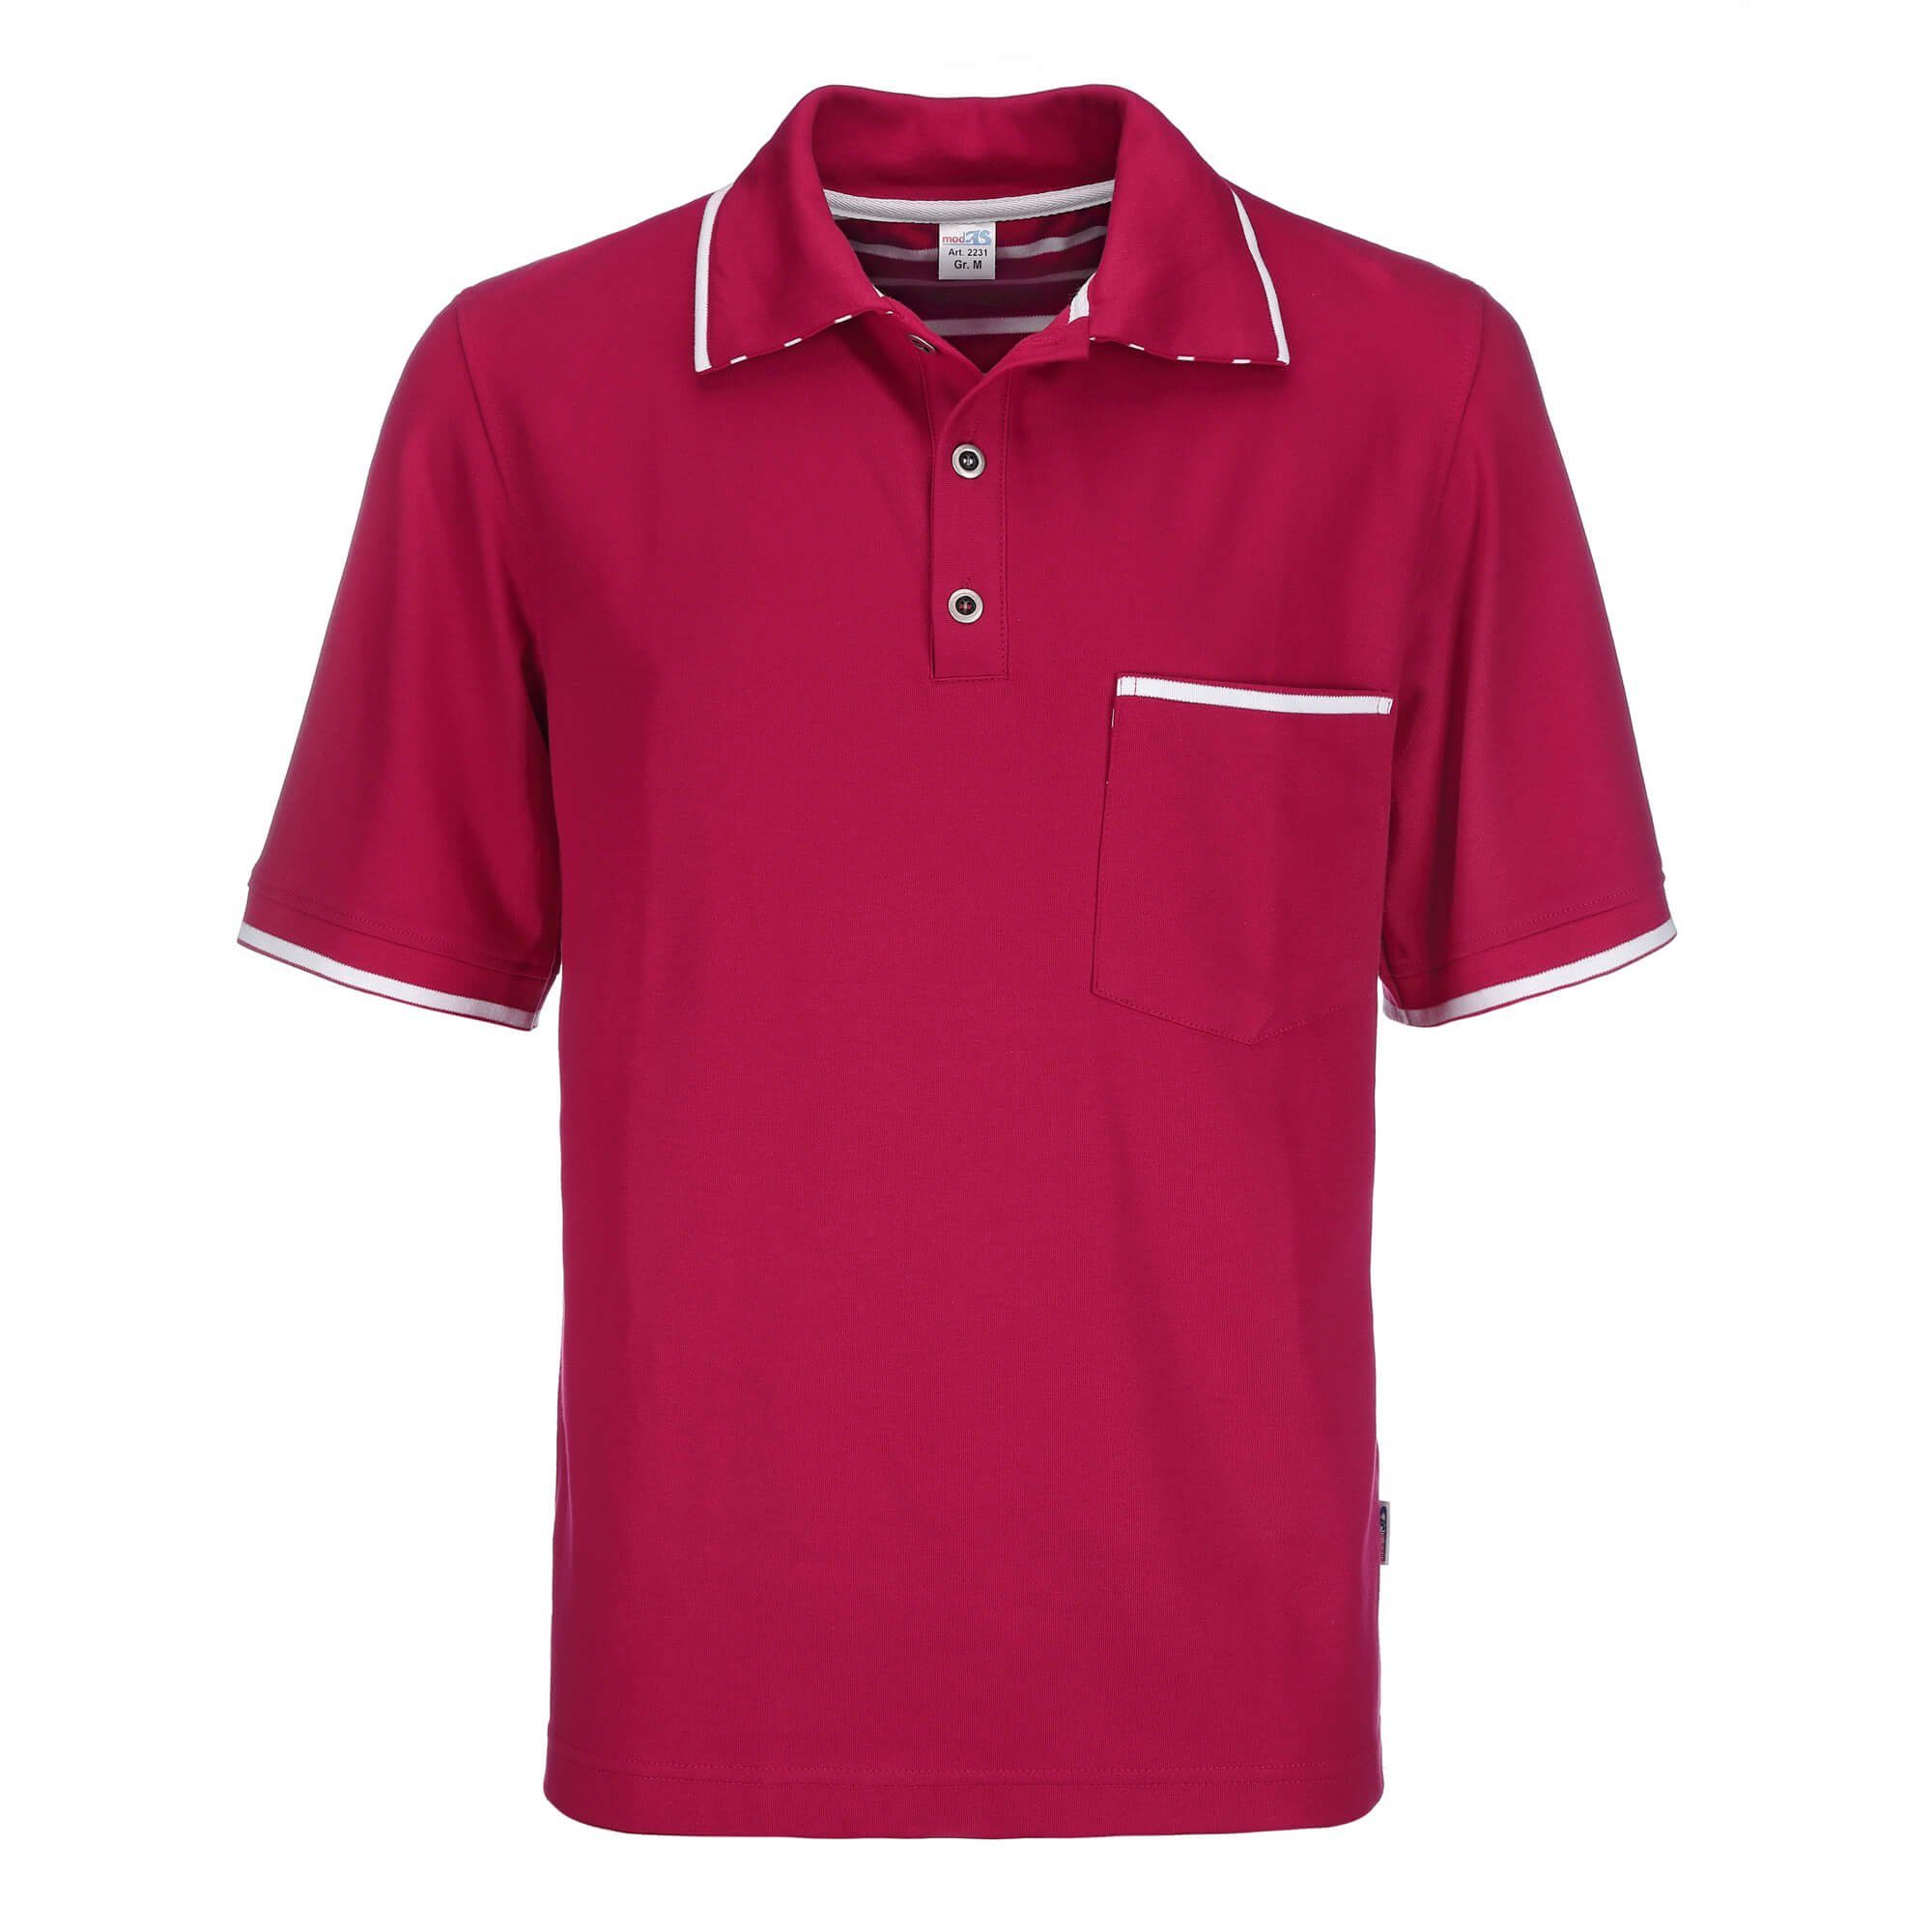 modAS Poloshirt Herren T-Shirt mit Knopfleiste mit 3 Metall-Knöpfen und Brusttasche (20) rot